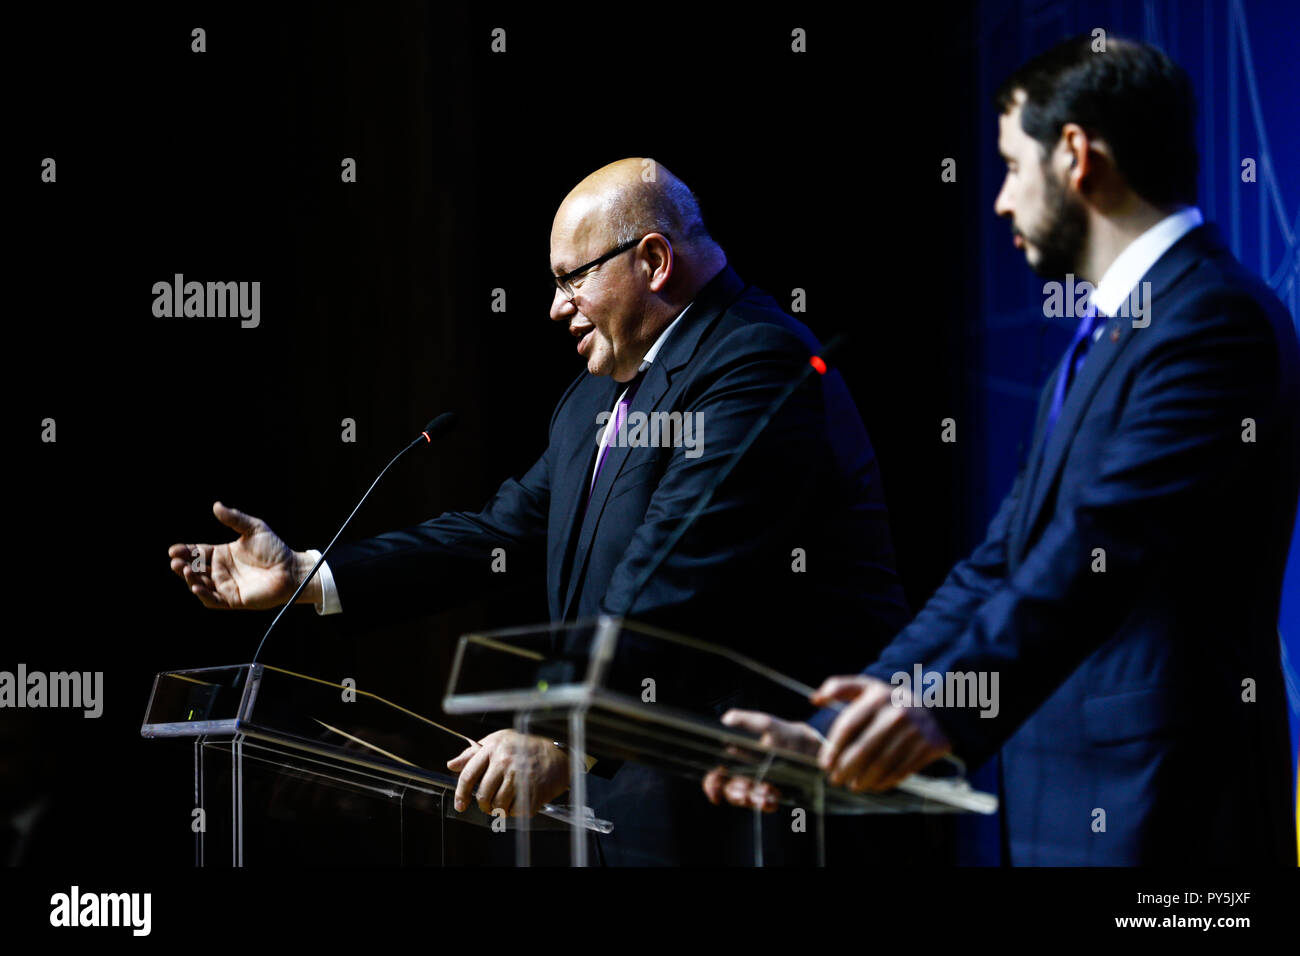 Ankara, Turquie. 25 octobre, 2018. Ministre fédéral de l'Economie Peter Altmaier (l, CDU) prend la parole lors d'une conférence de presse aux côtés du ministre des Finances turc Berat Albayrak. Credit : Ahmed Deeb/dpa/Alamy Live News Banque D'Images